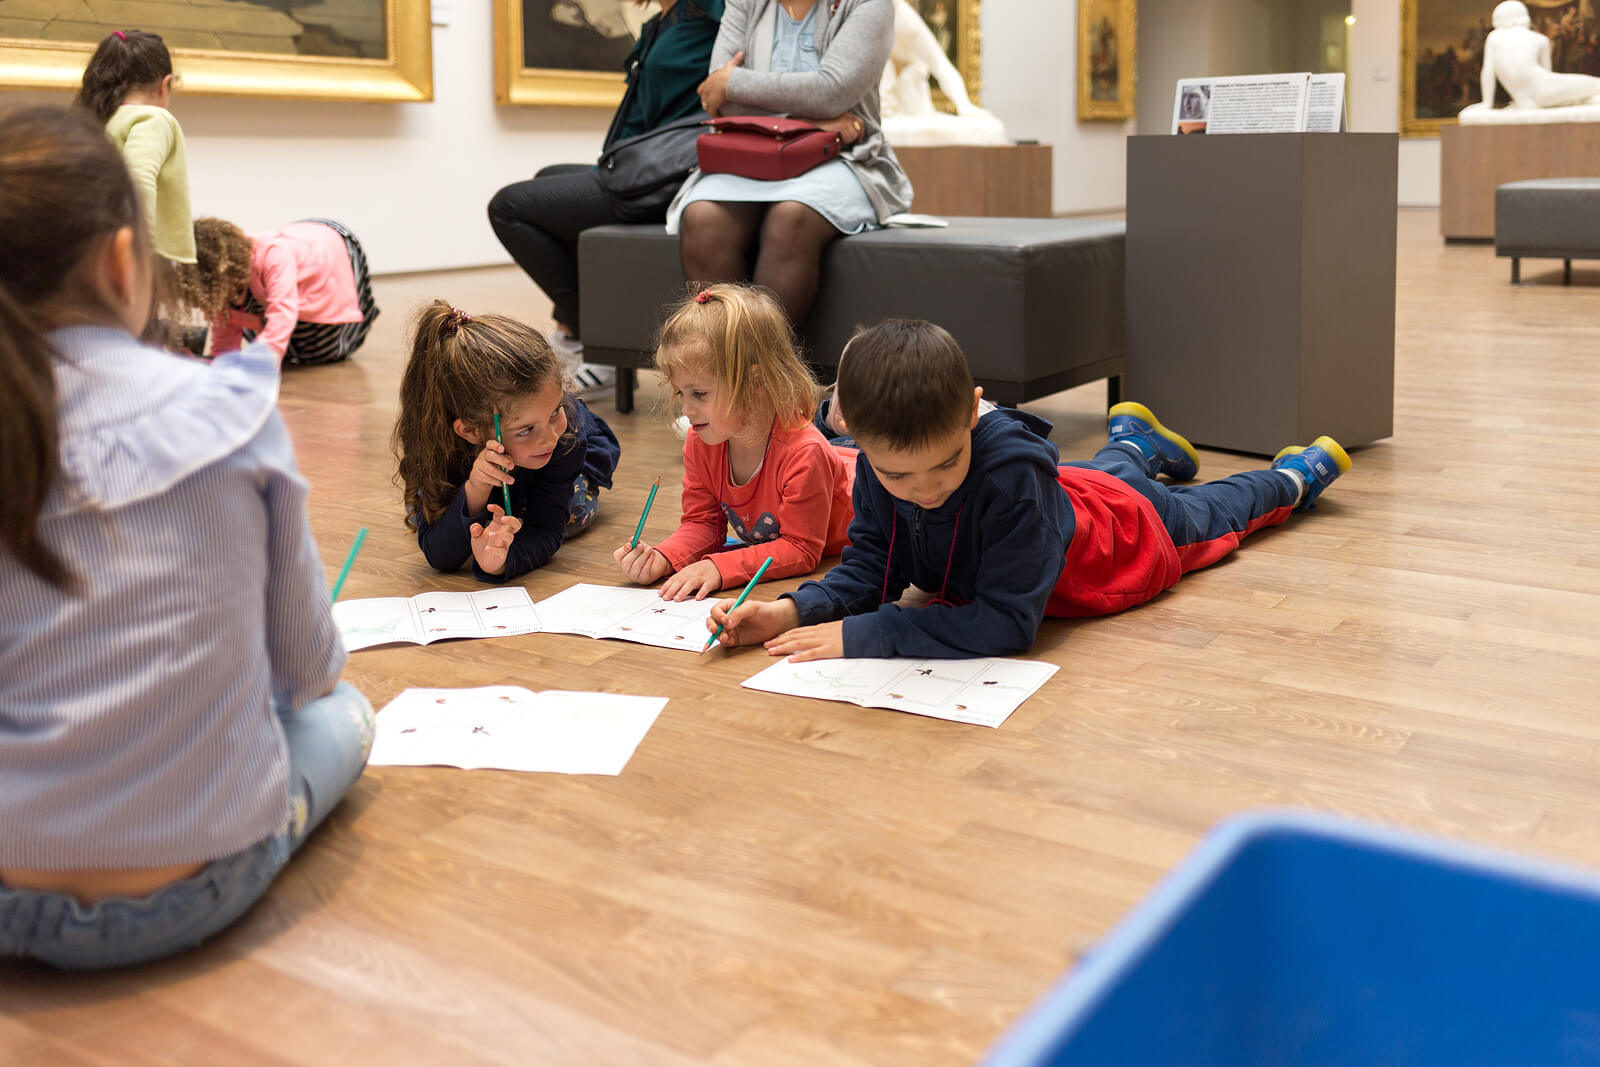 Niños estudiando en un museo gracias al aprendizaje cruzado.